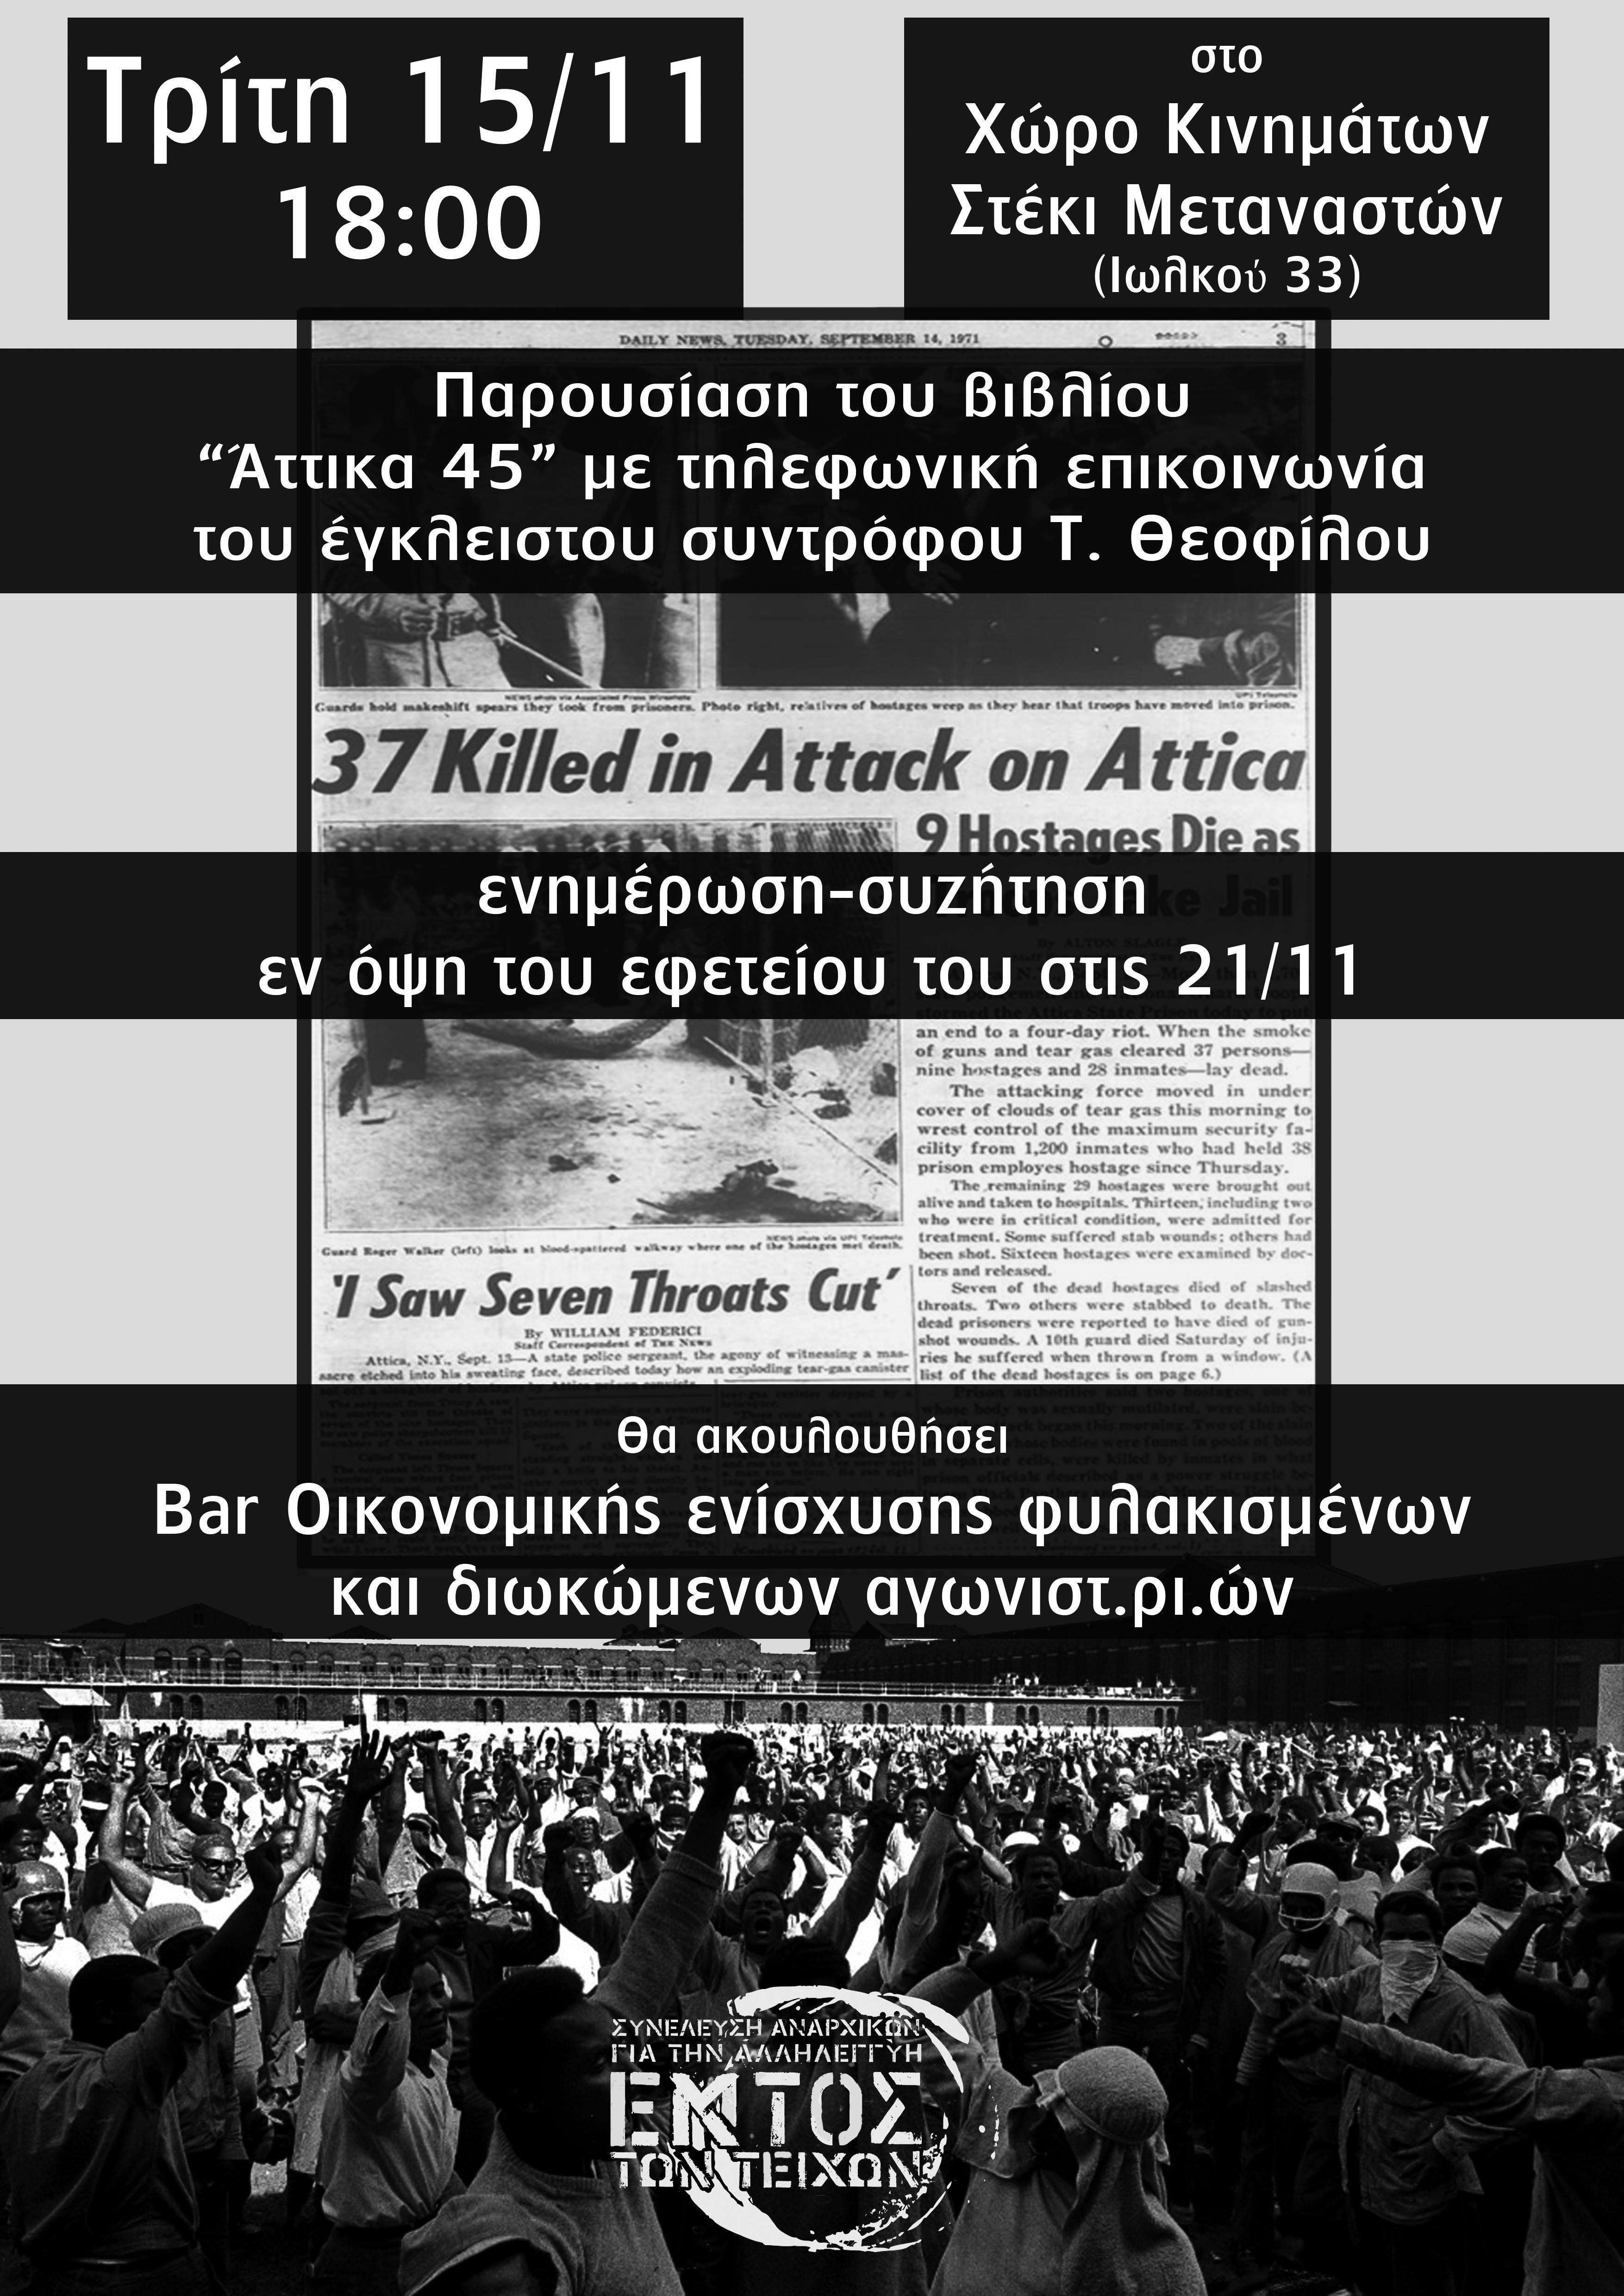 Βόλος: Βιβλιοπαρουσίαση του Άττικα 45 και ενημέρωση εφετείου Τ. Θεοφίλου [Τρίτη 15/11, 18:00]